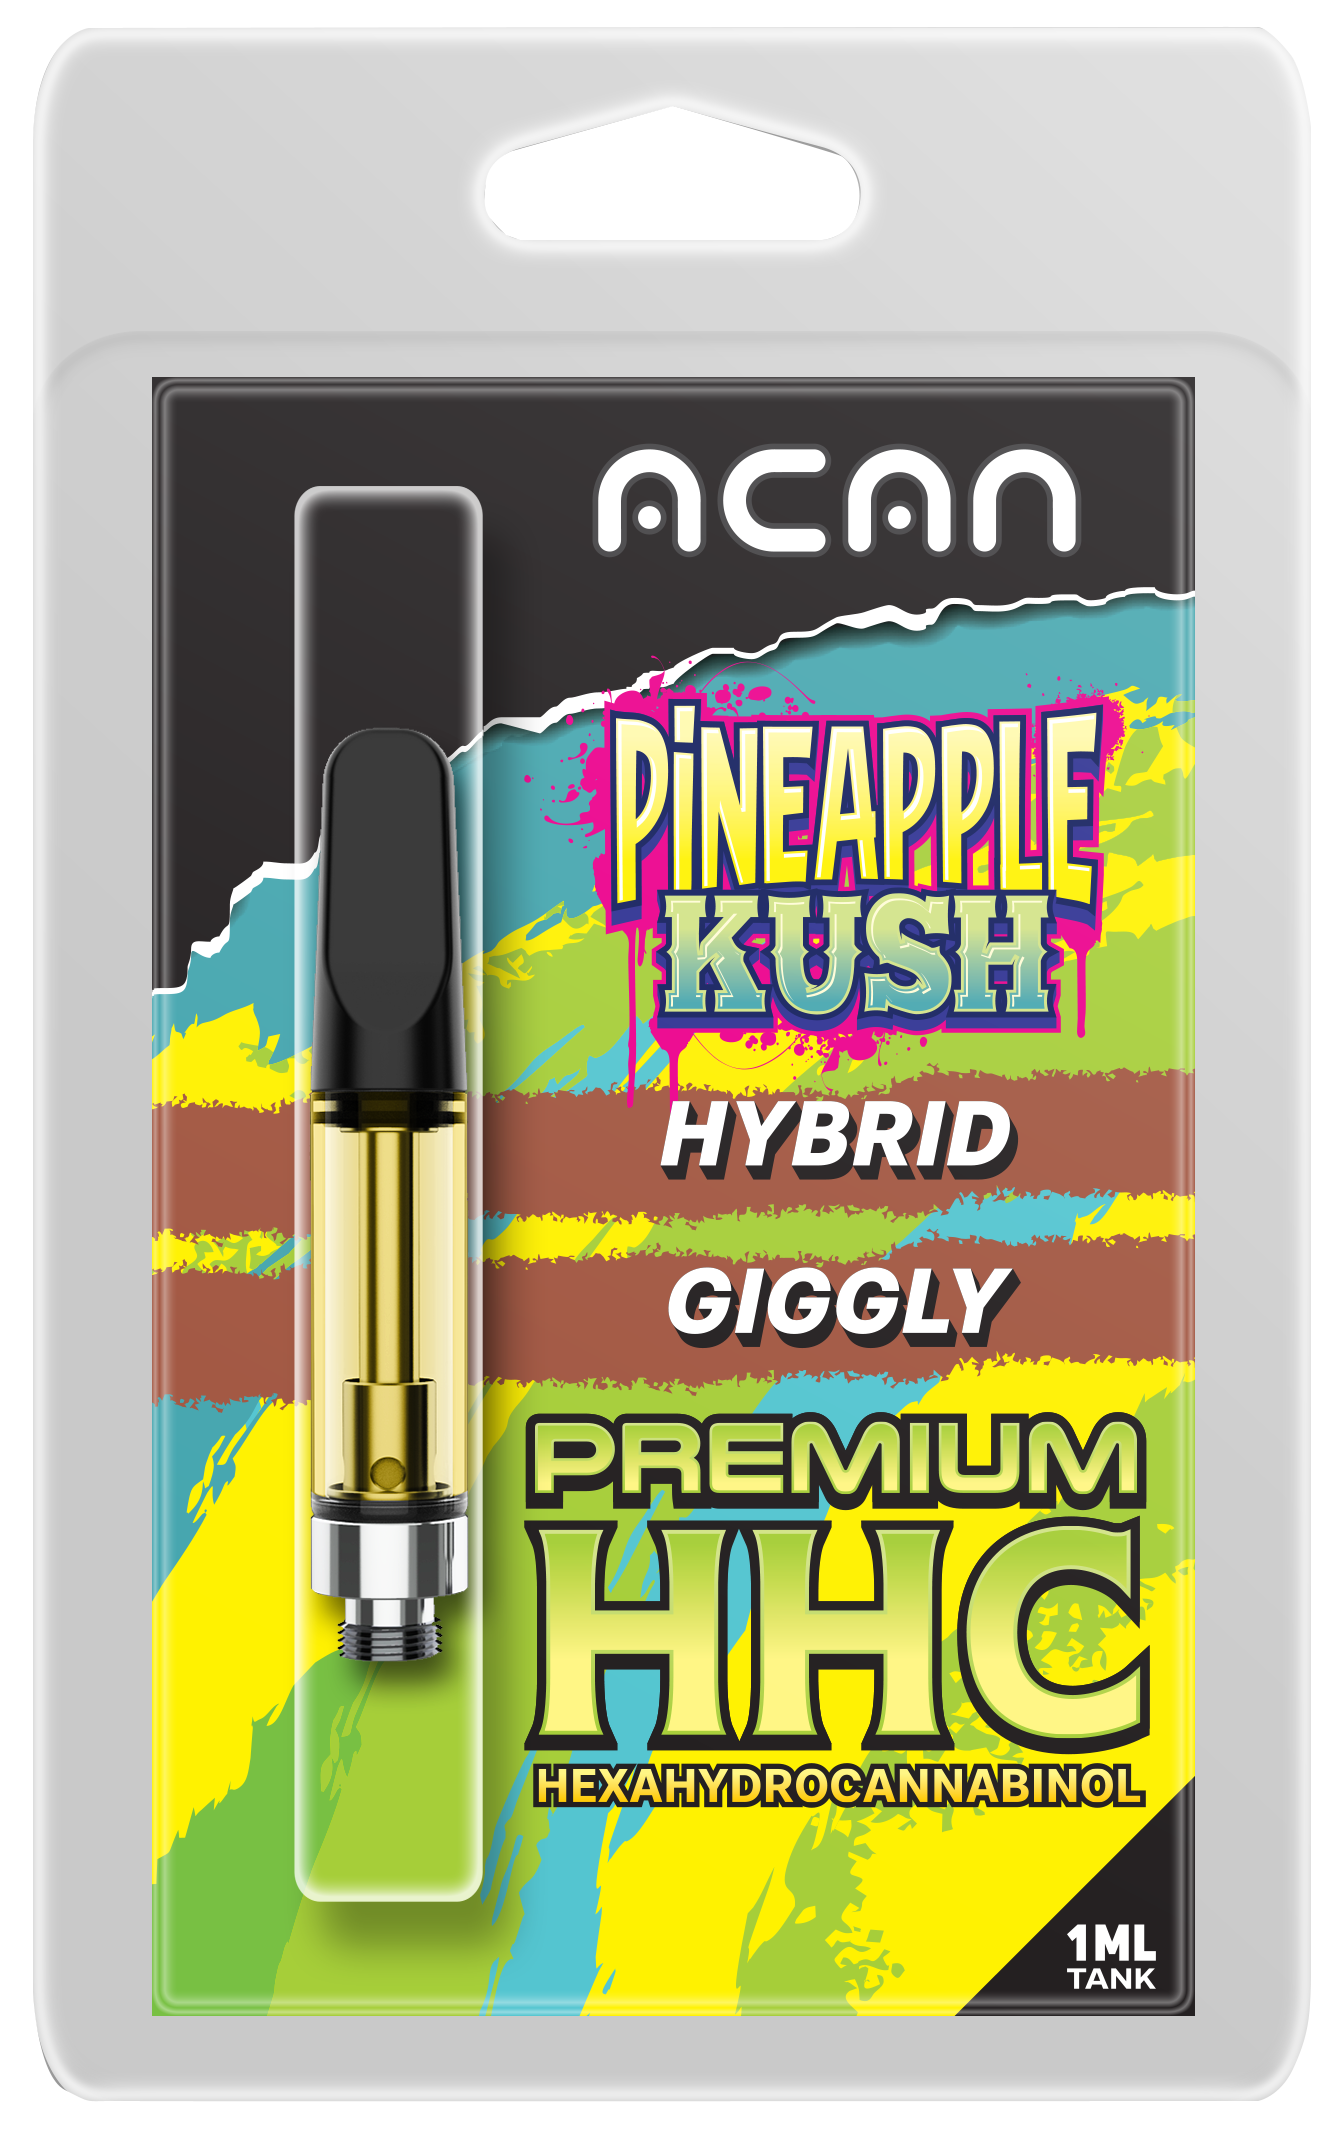 Pineapple Kush Premium HHC